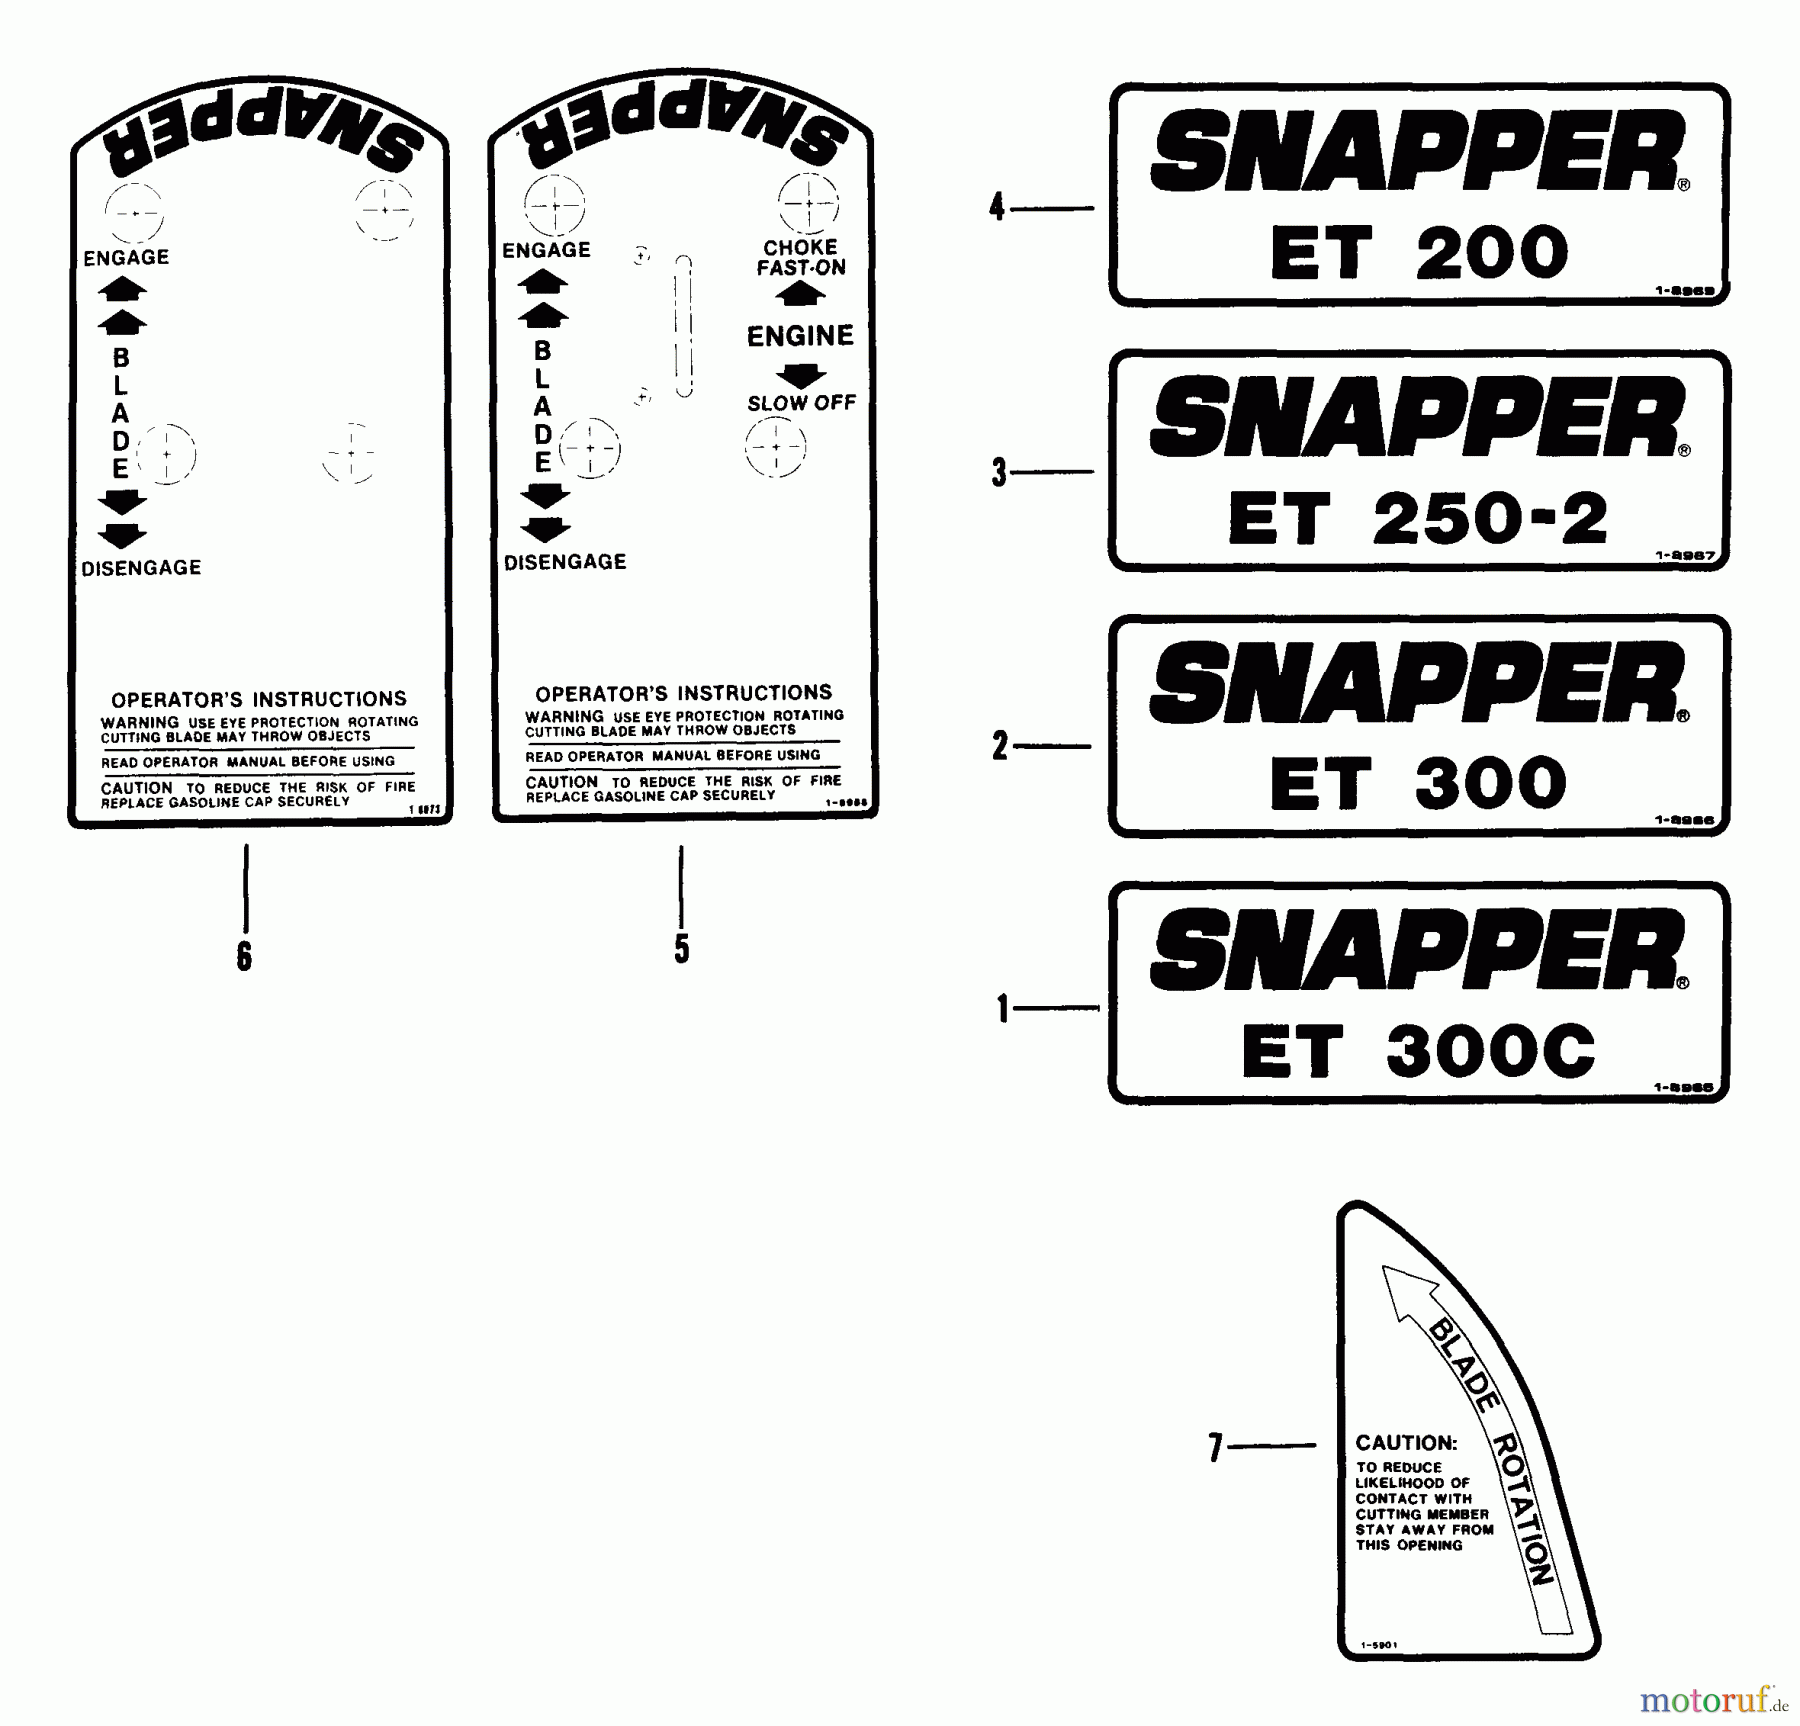  Snapper Kantenschneider ET300B - Snapper Edger Trimmer, 3 HP, Series 0 Decals